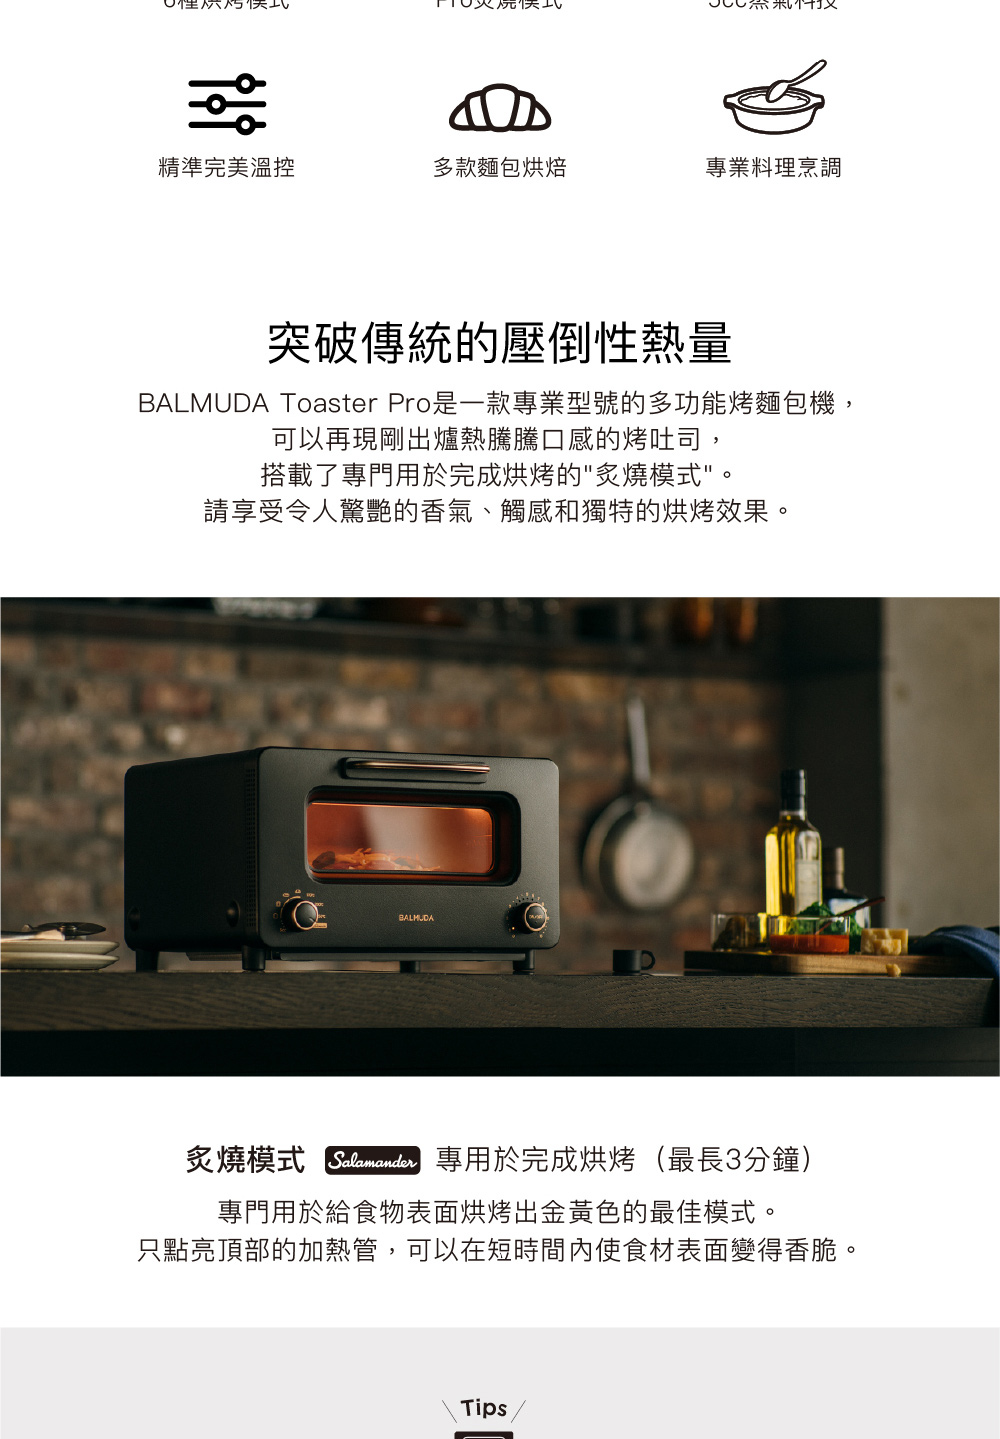 BALMUDA 百慕達 The Toaster Pro 蒸氣